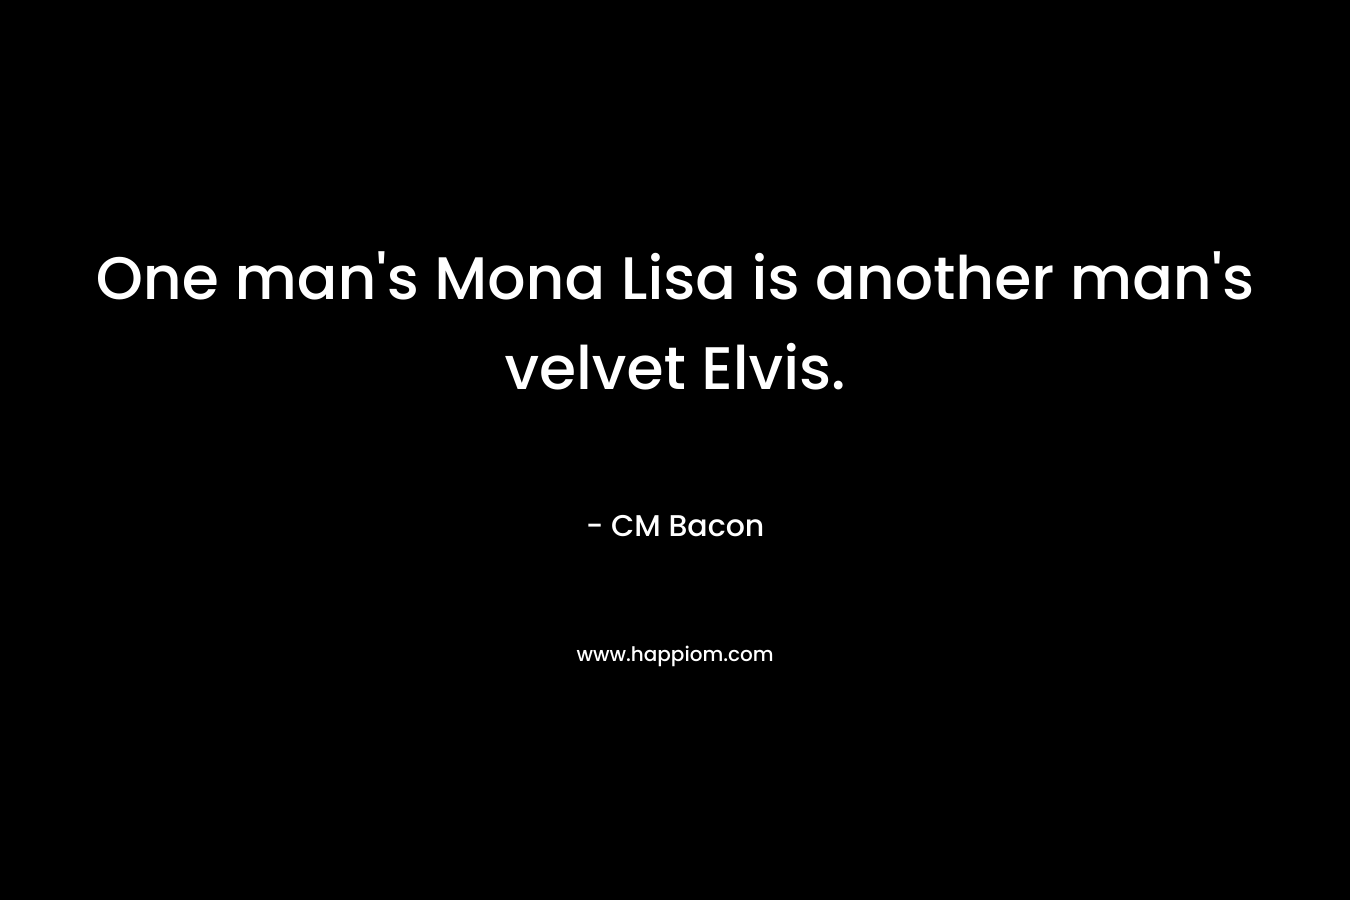 One man’s Mona Lisa is another man’s velvet Elvis. – CM Bacon